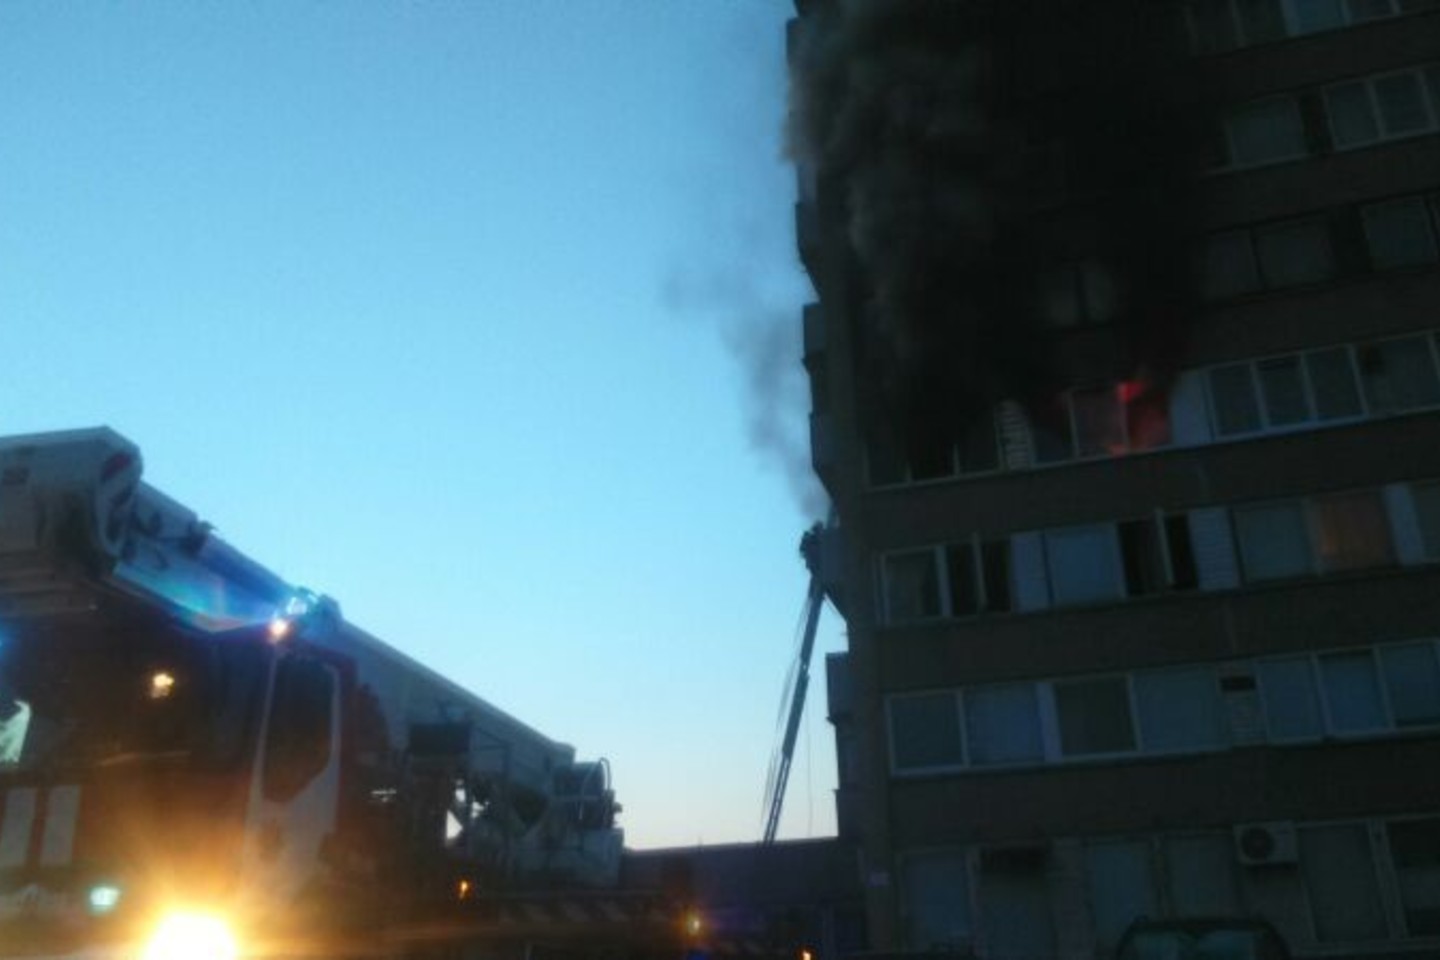 Penktadienio vakarą Vilniaus Žirmūnų gatvės 147-ojo namo ketvirtajame aukšte atvira liepsna smarkiai degė dviejų kambarių butas. Į įvykio vietą suplūdo gaisrininkų pajėgos.<br>E.Valiuškevičiūtės nuotr.